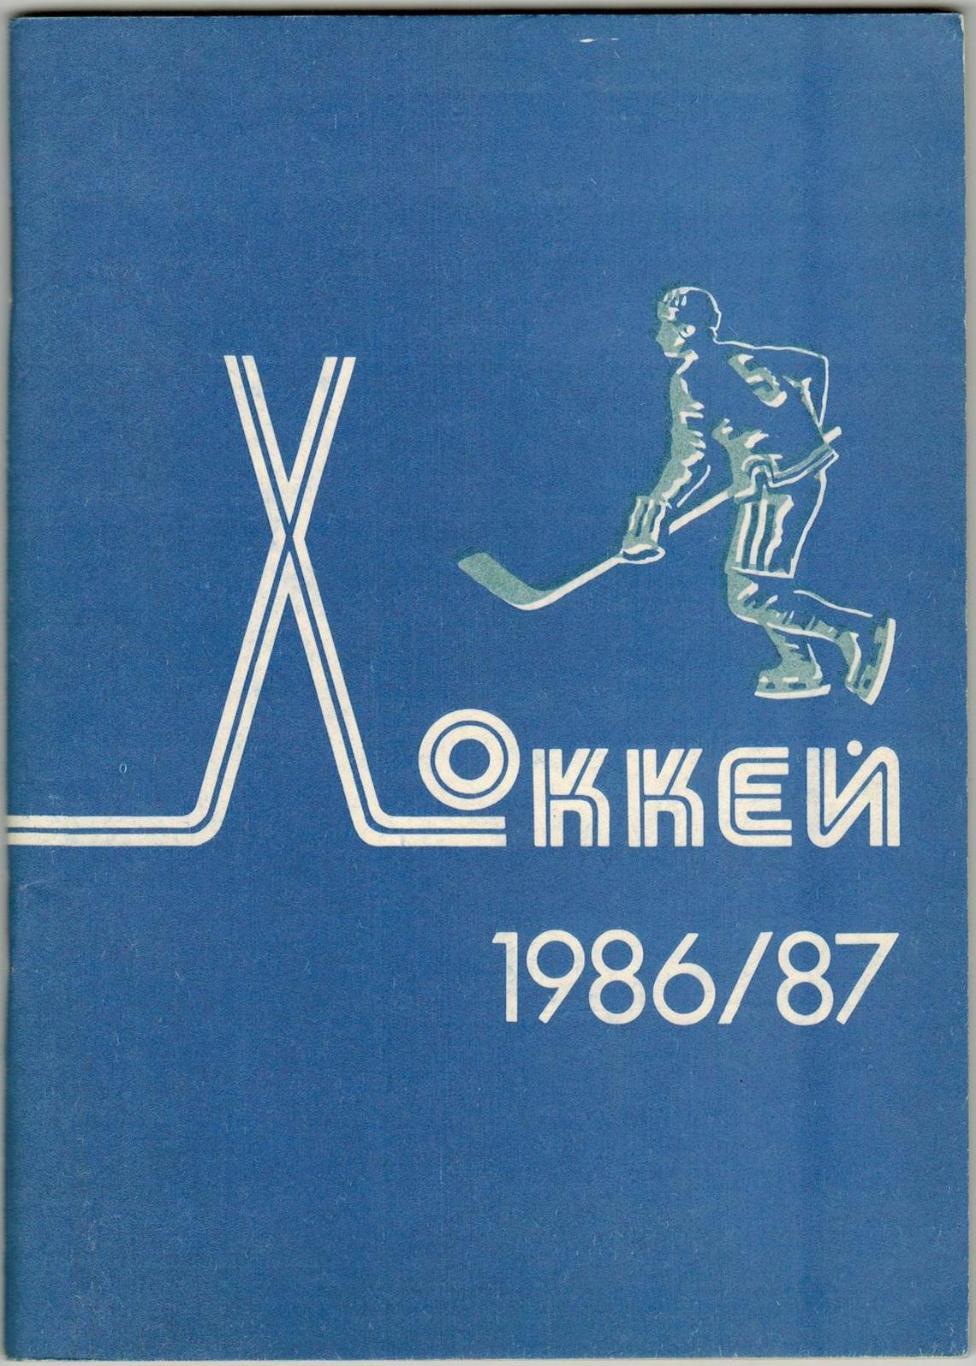 Хоккей 1986/1987 Минск Чемпионат мира и Европы-1986 Стенограммы матчей (см скан)